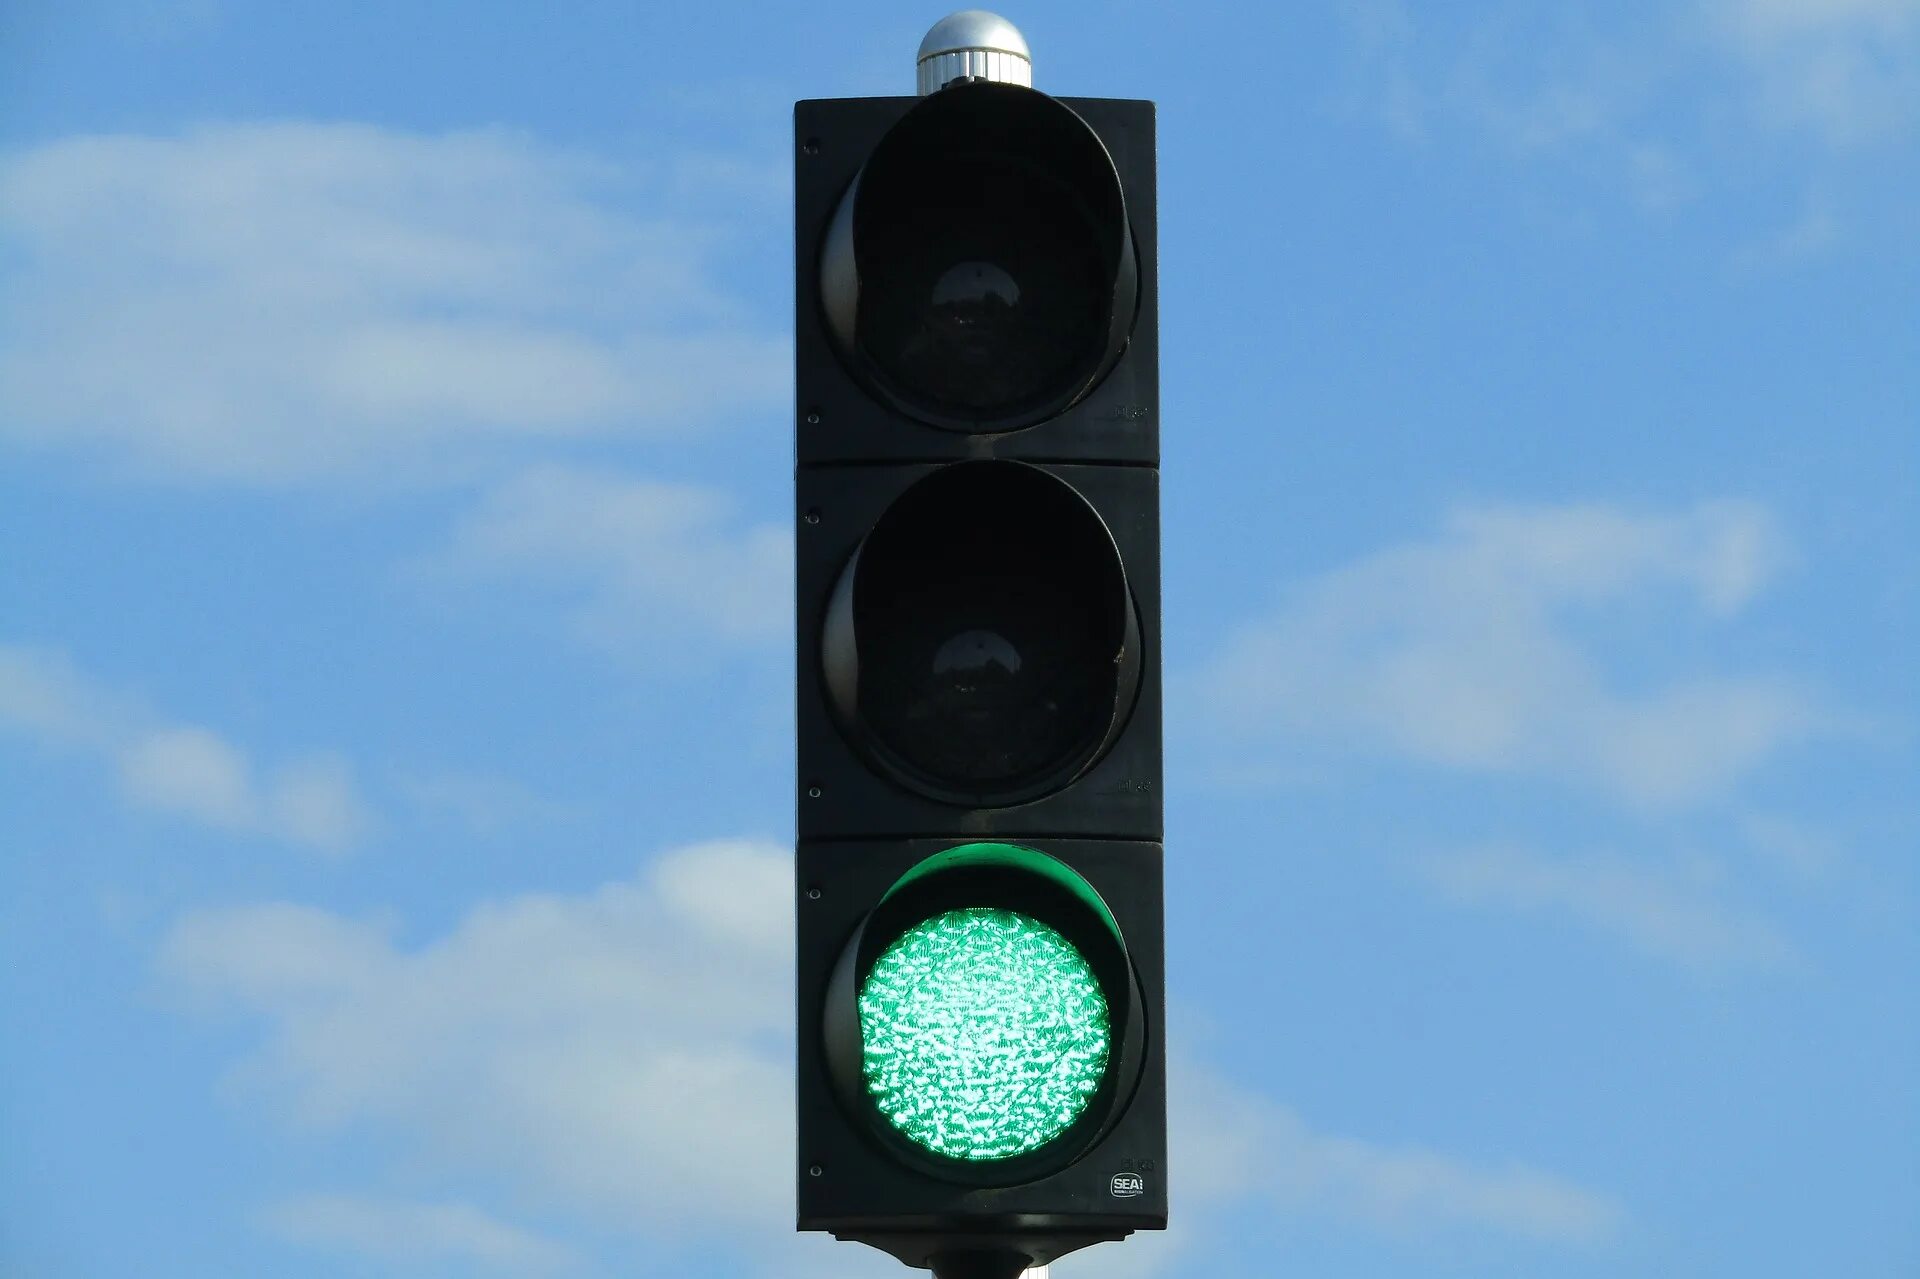 Зеленый свет жизни. Зеленый свет светофора. Зеленый цвет светофора. Зелйныйсвет светофора. Зеленый свет светоы.